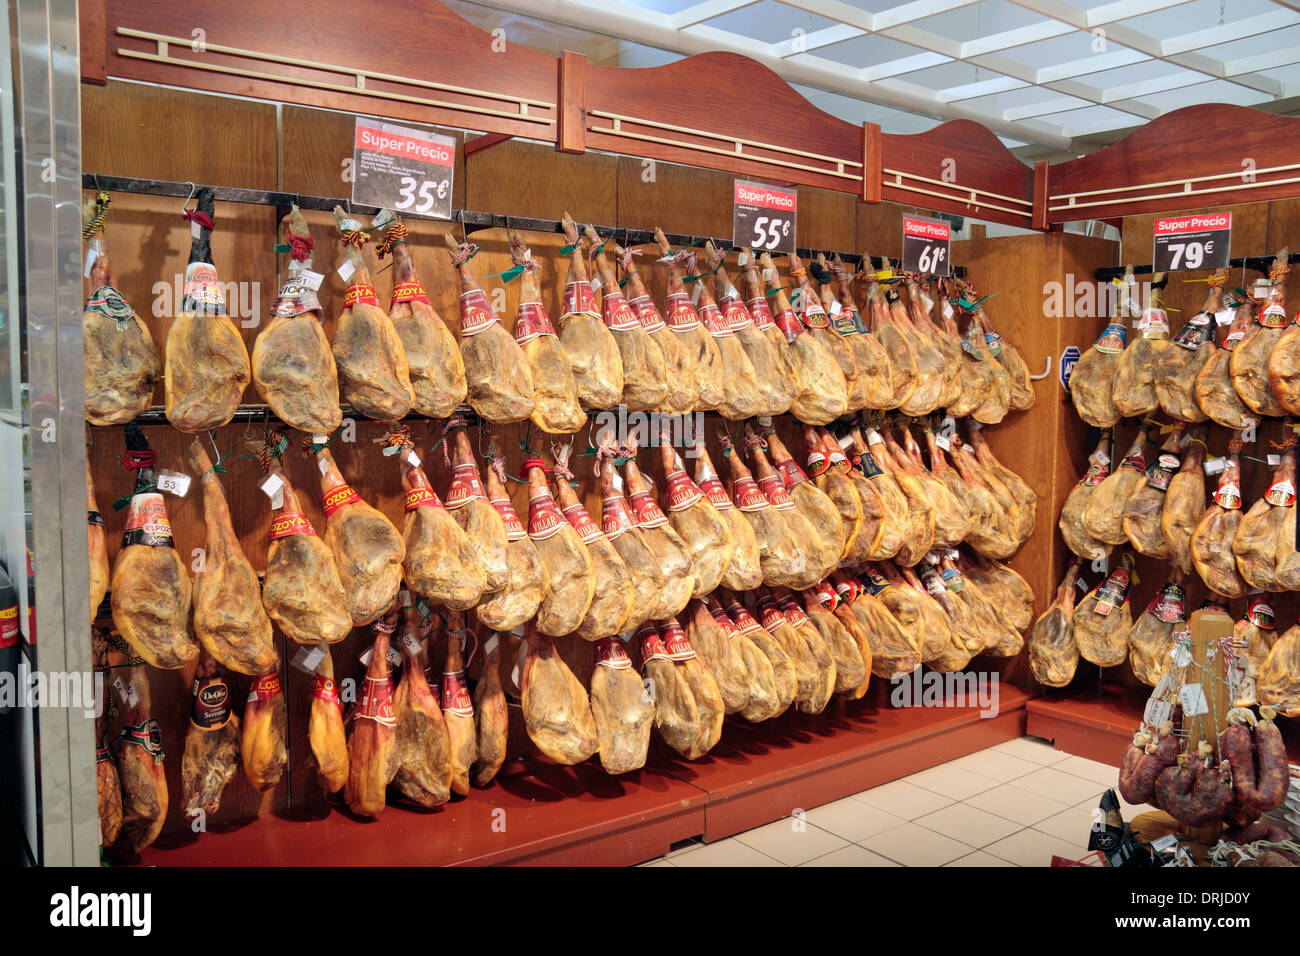 Supermercado visualización de jamones (jamones) en Huelva, Andalucía, España. Foto de stock